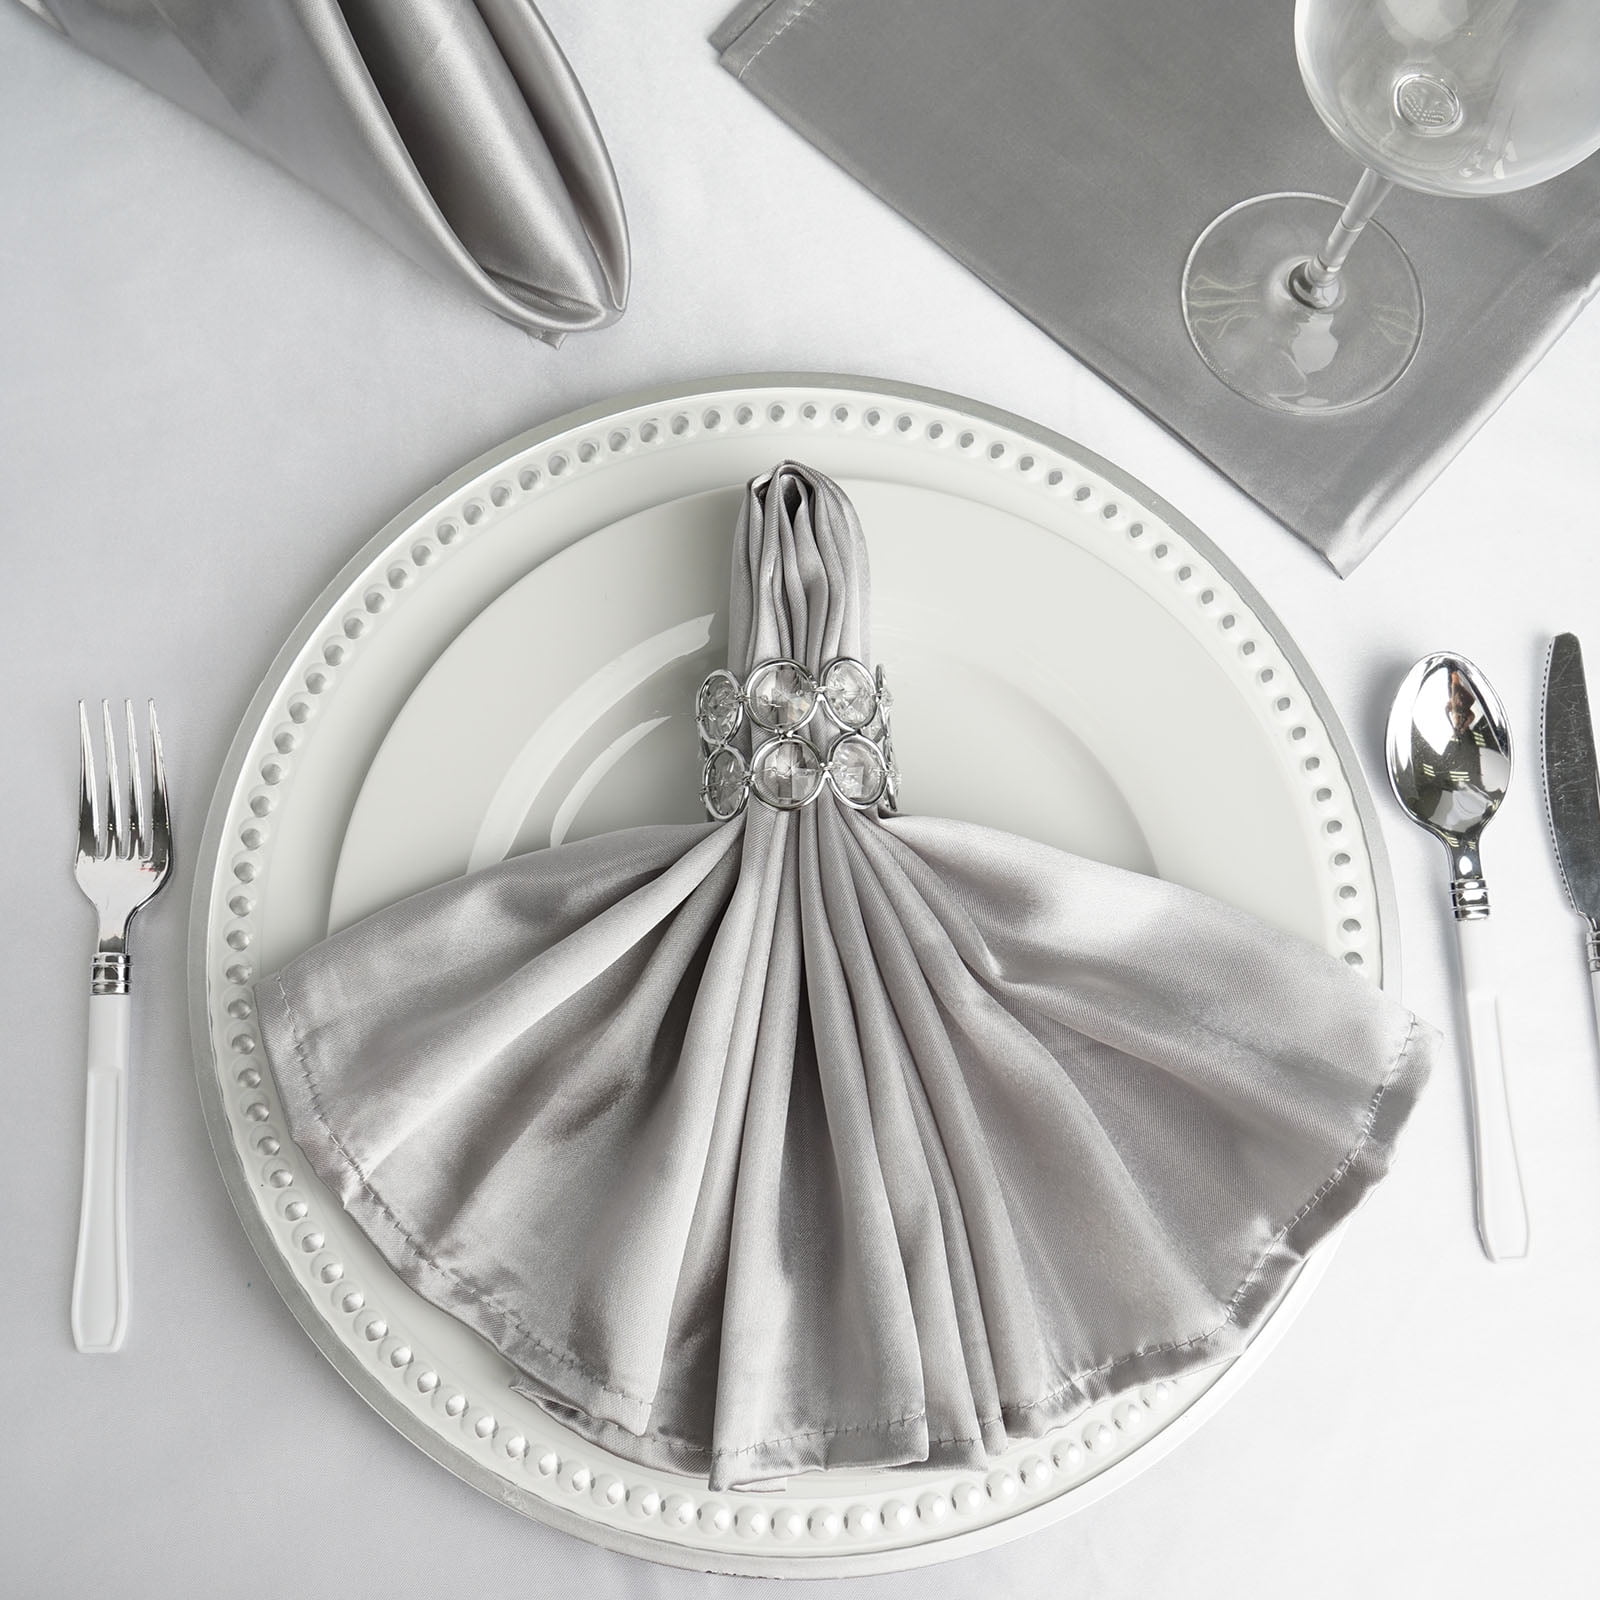 Wedding Napkins Set of 12 in Silver Grey Color, Diner Napkins